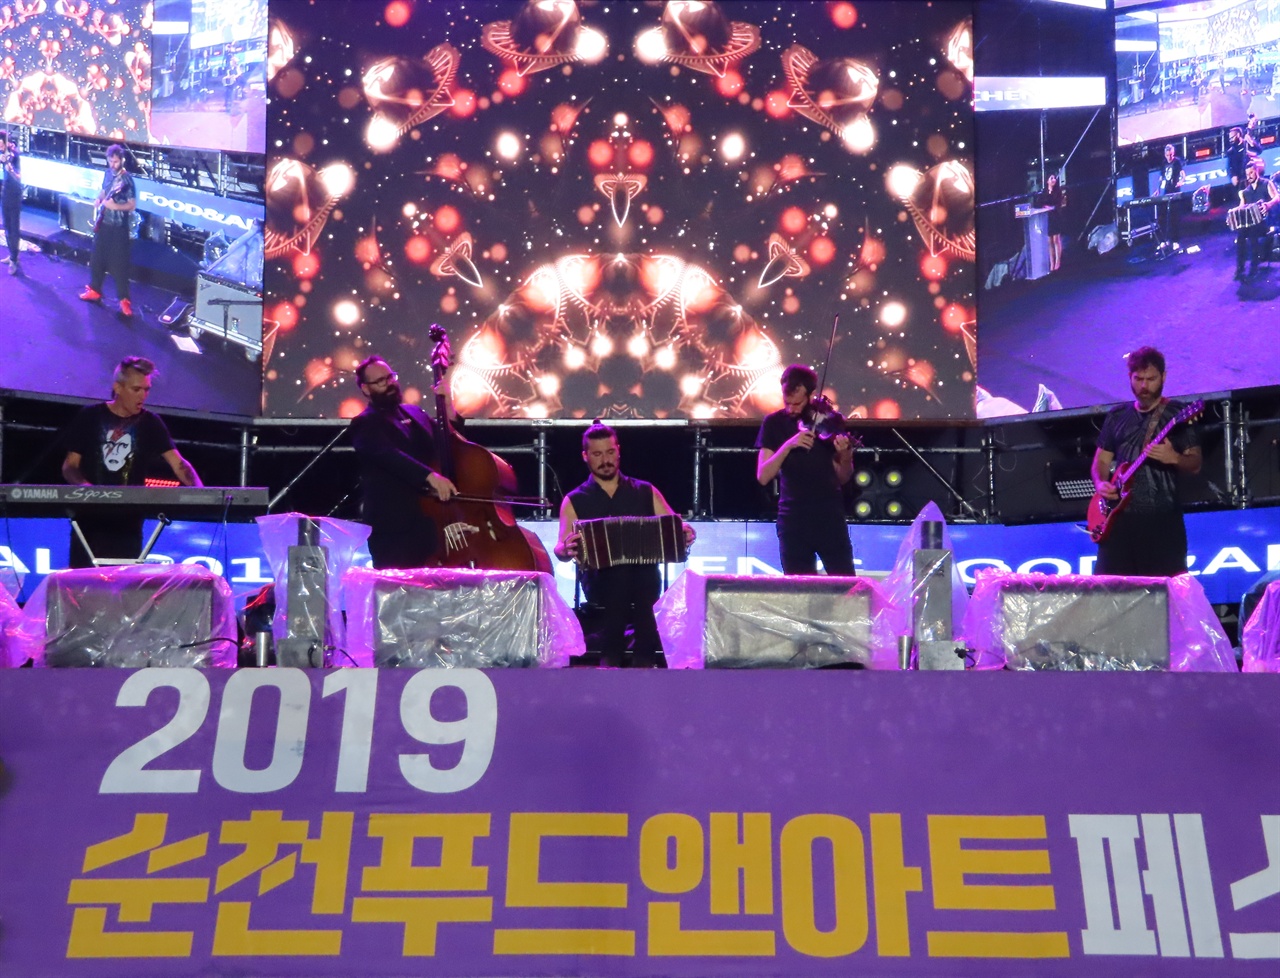 27일에 개막한 2019 순천푸드앤아트페스티벌에서 세계적인 탱고 연주자 "엘 카치바체 퀸텐토" 밴드가 공연하고 있다,